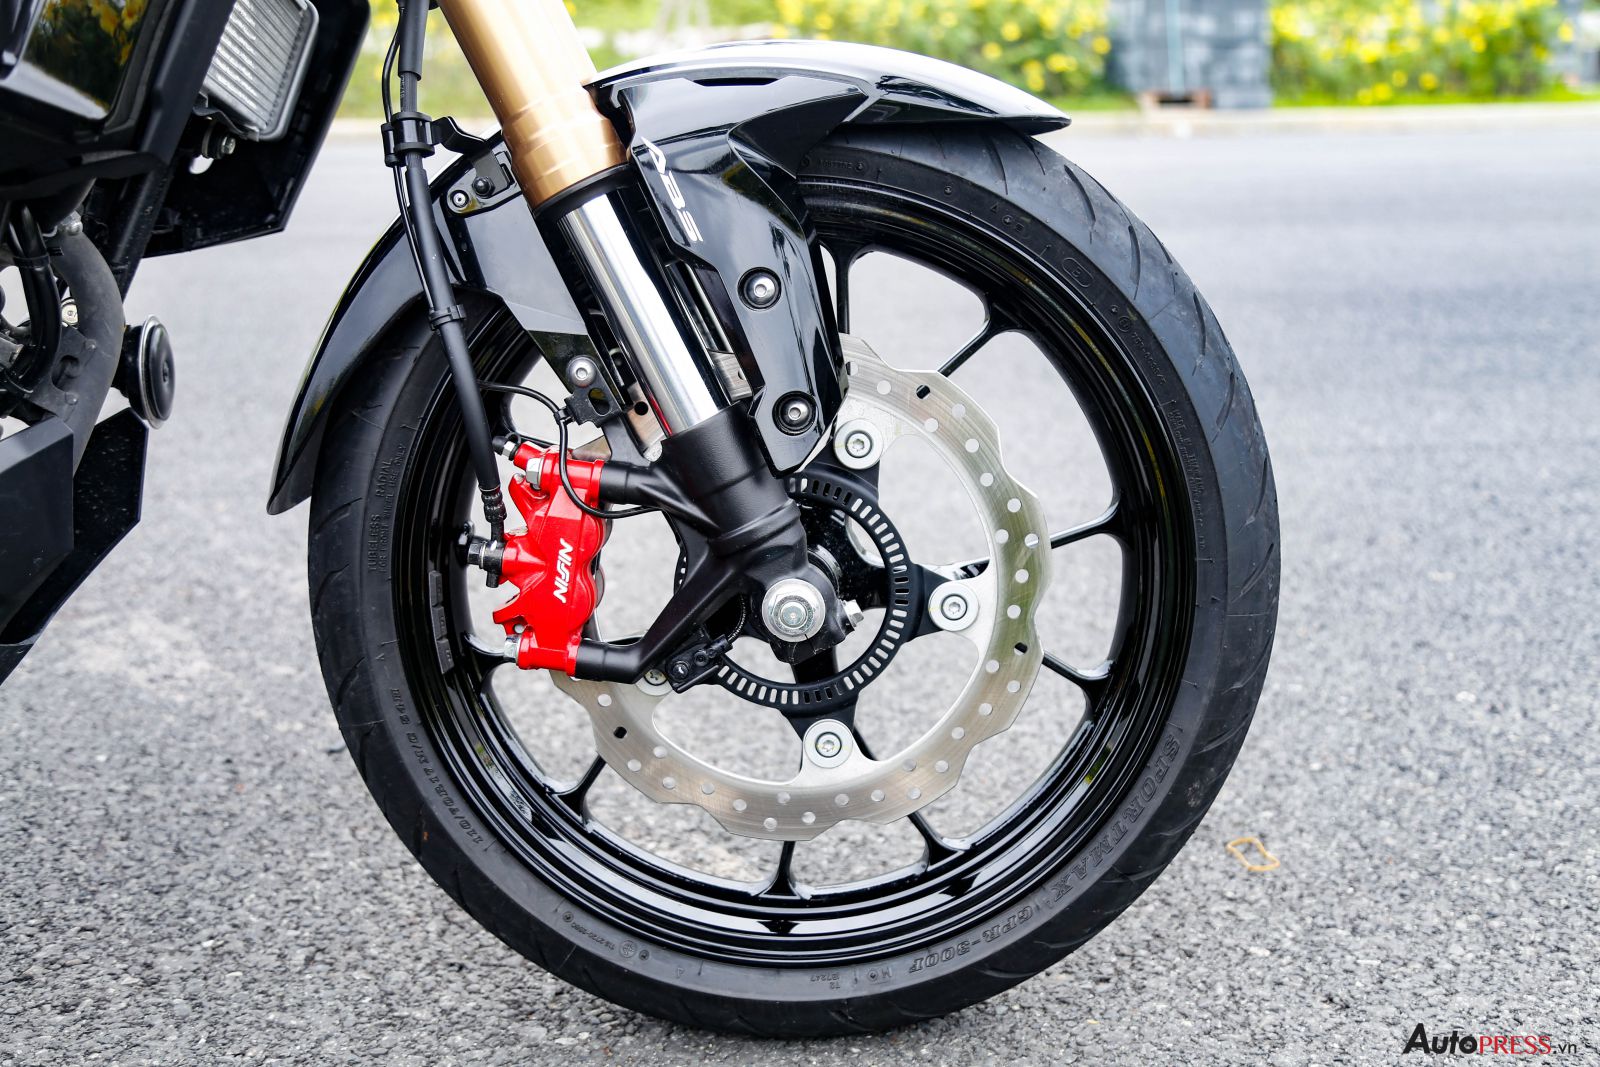 Honda CB150R 2019 naked bike đậm chất chơi